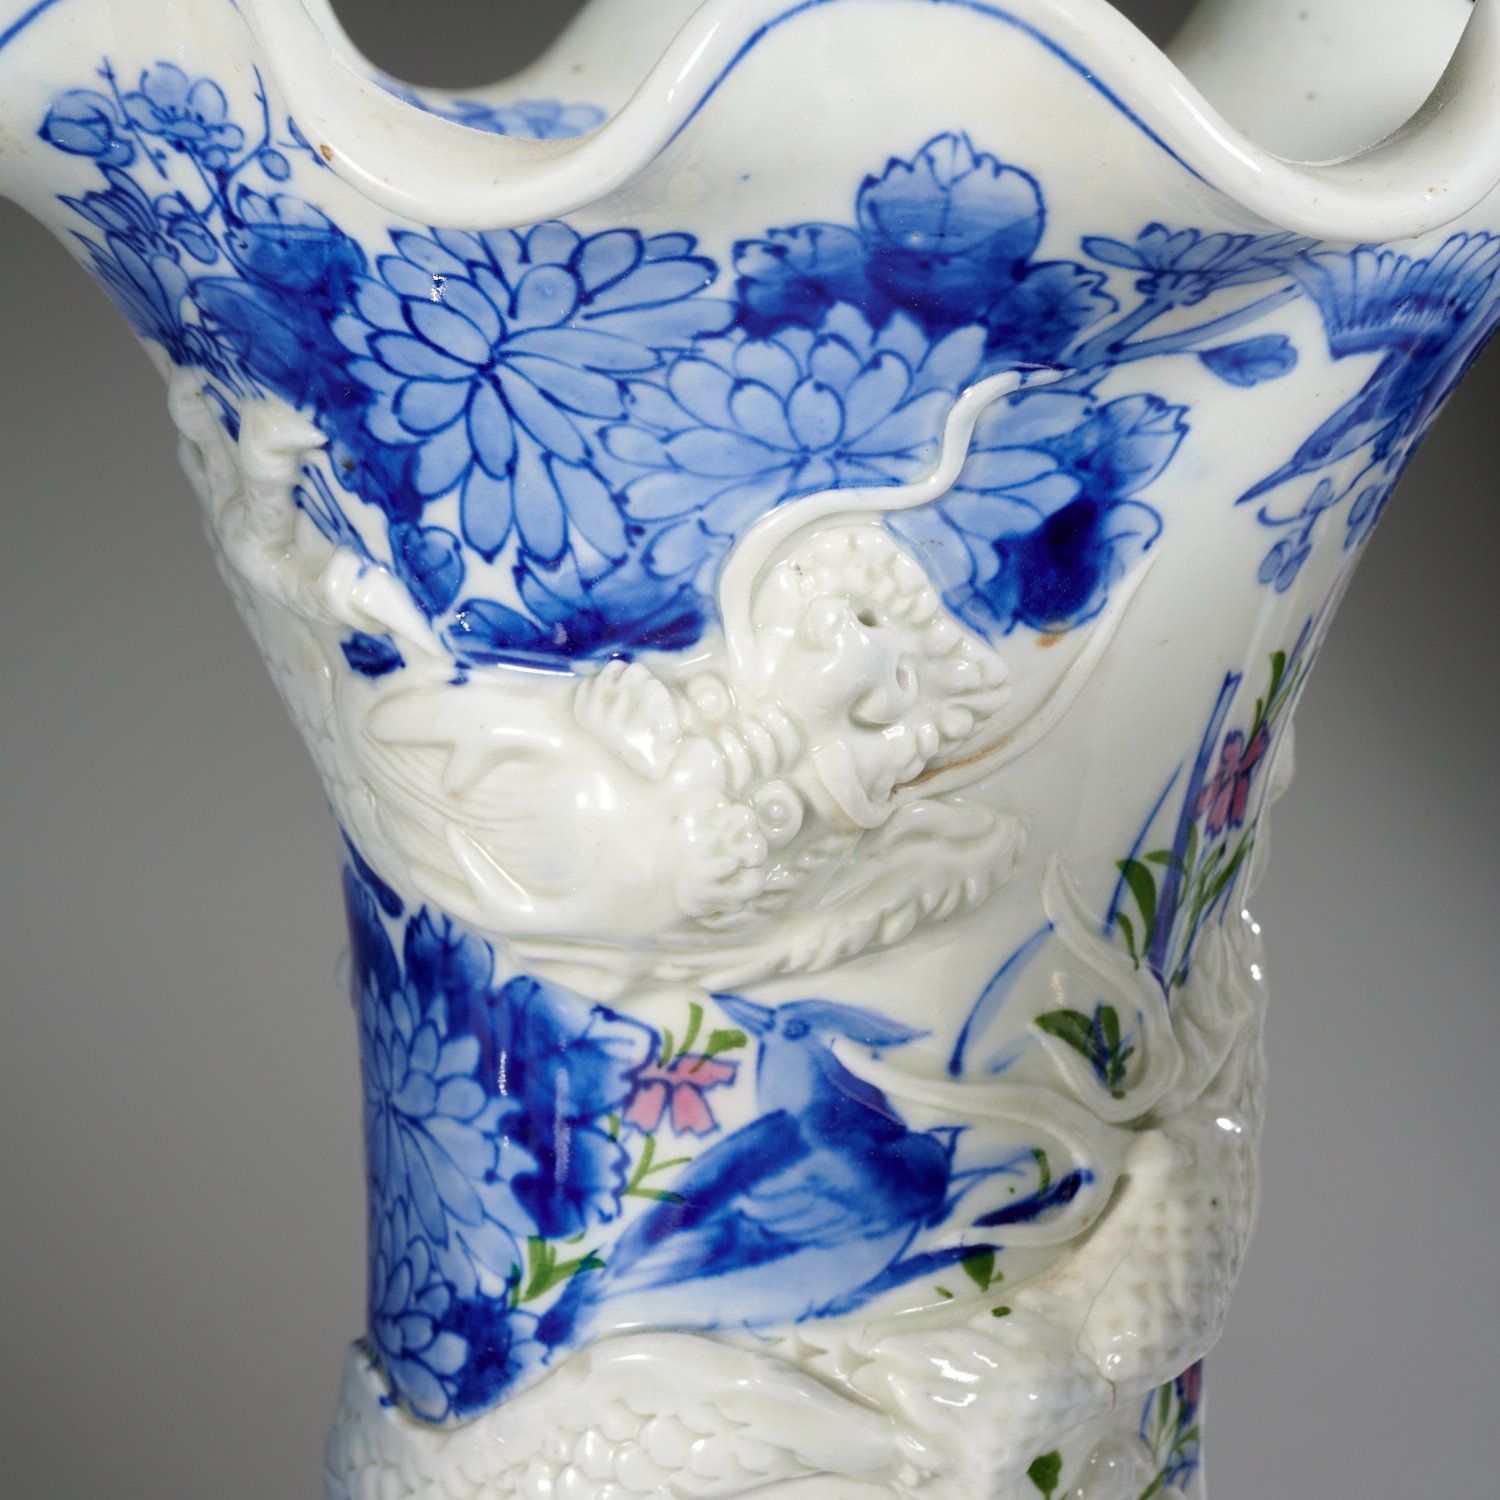 Japanese Hirado porcelain (3) piece garniture - Image 2 of 6